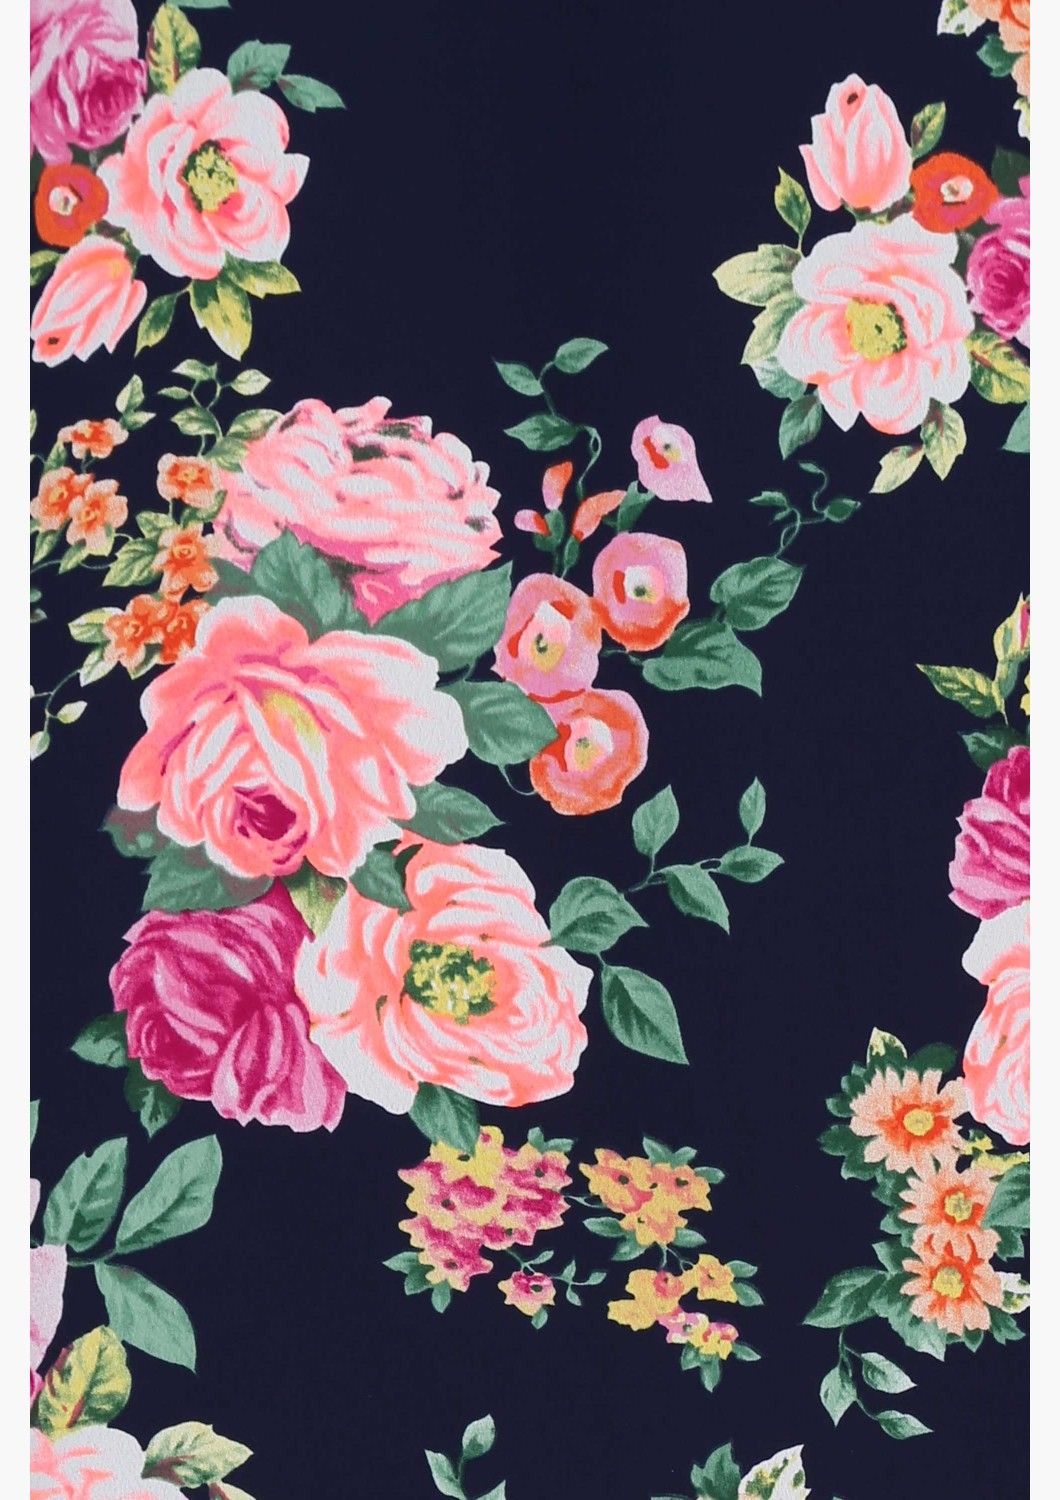 joli fond d'écran floral,rose,noir,fleur,rose,modèle